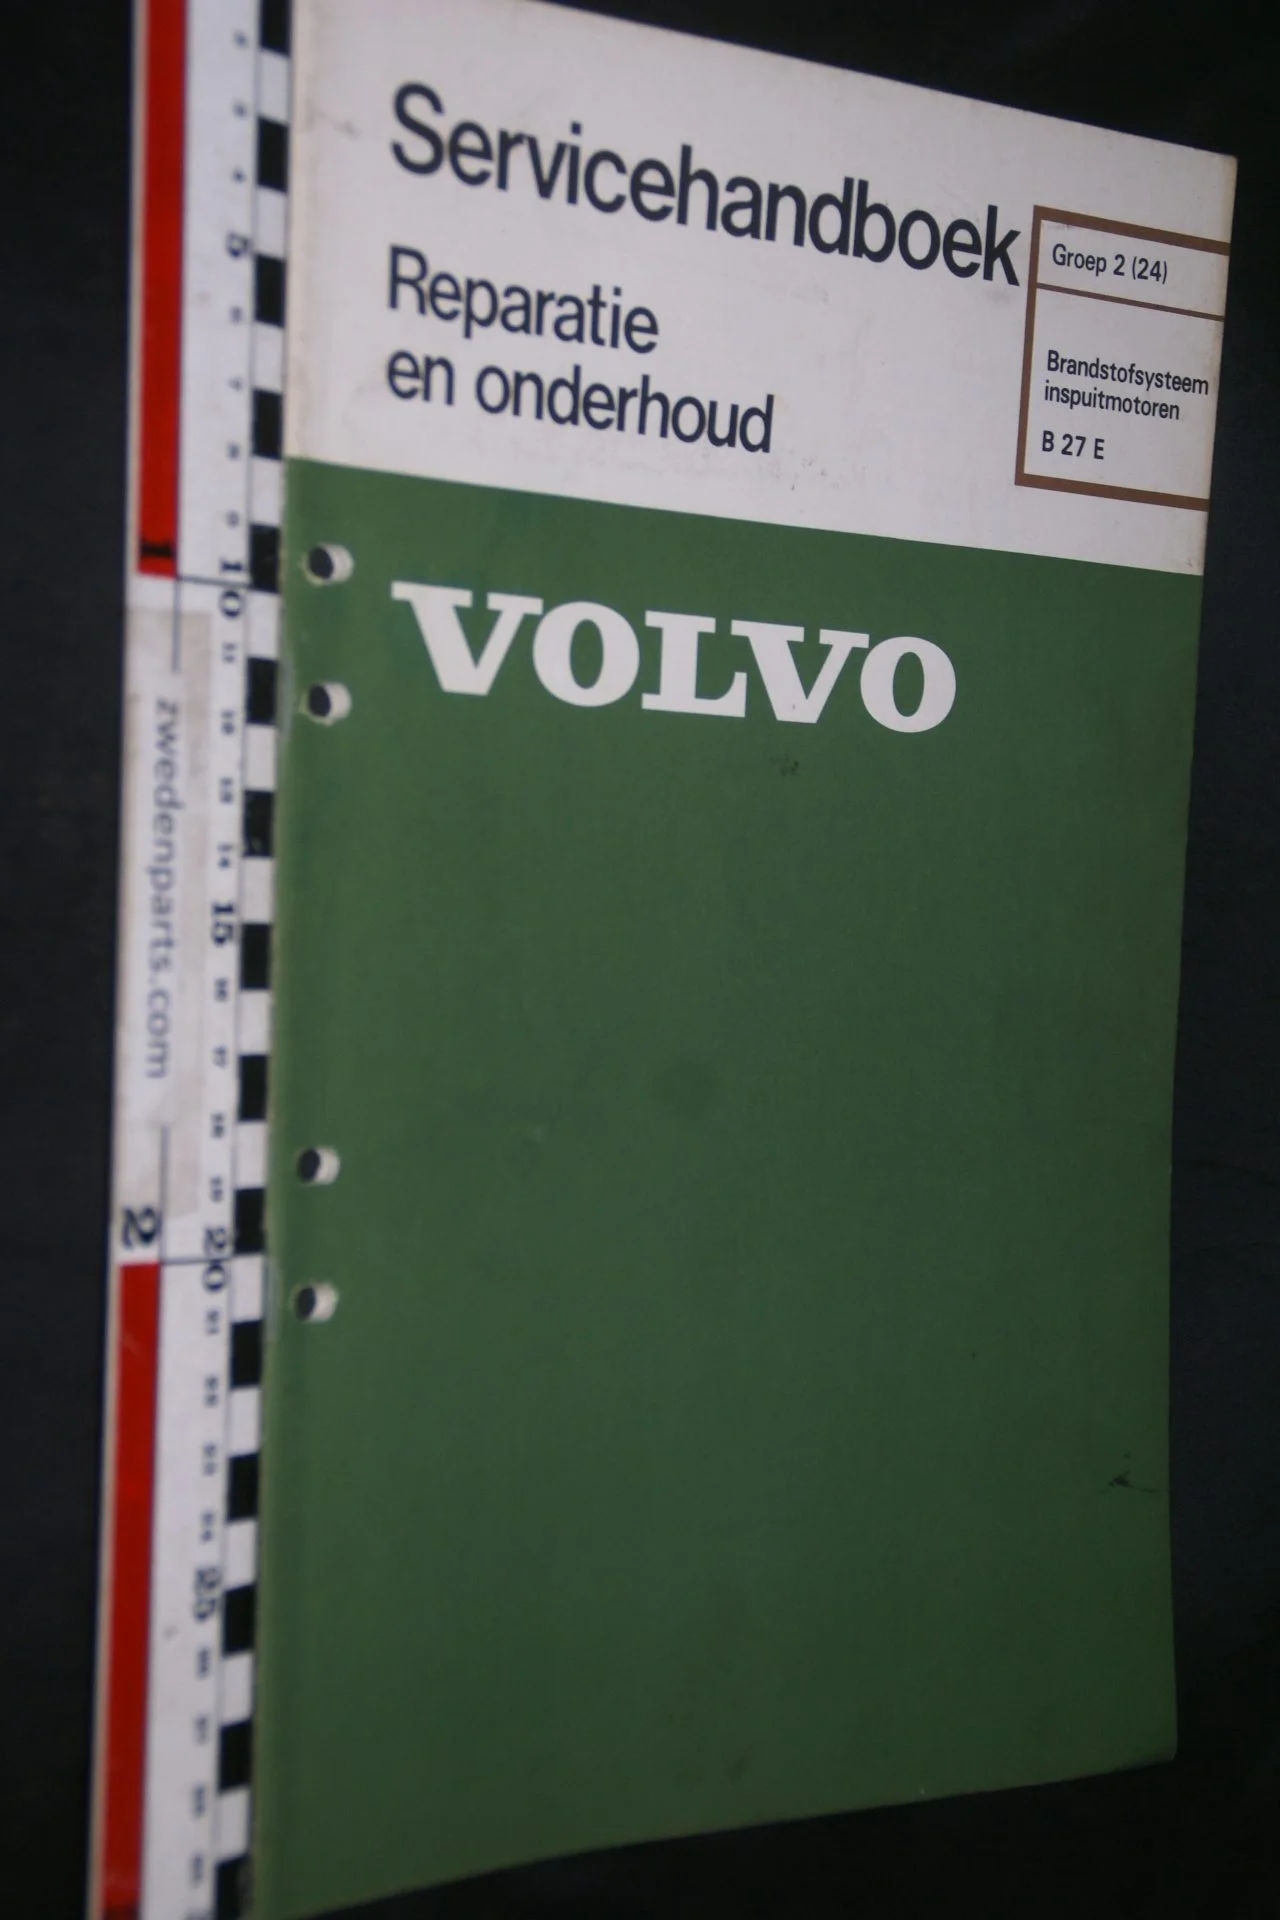 DSC06764 1977 origineel Volvo B27, 260 servicehandboek 2 (24) brandstofsysteem inj motoren 1 van 750 TP 11547-1